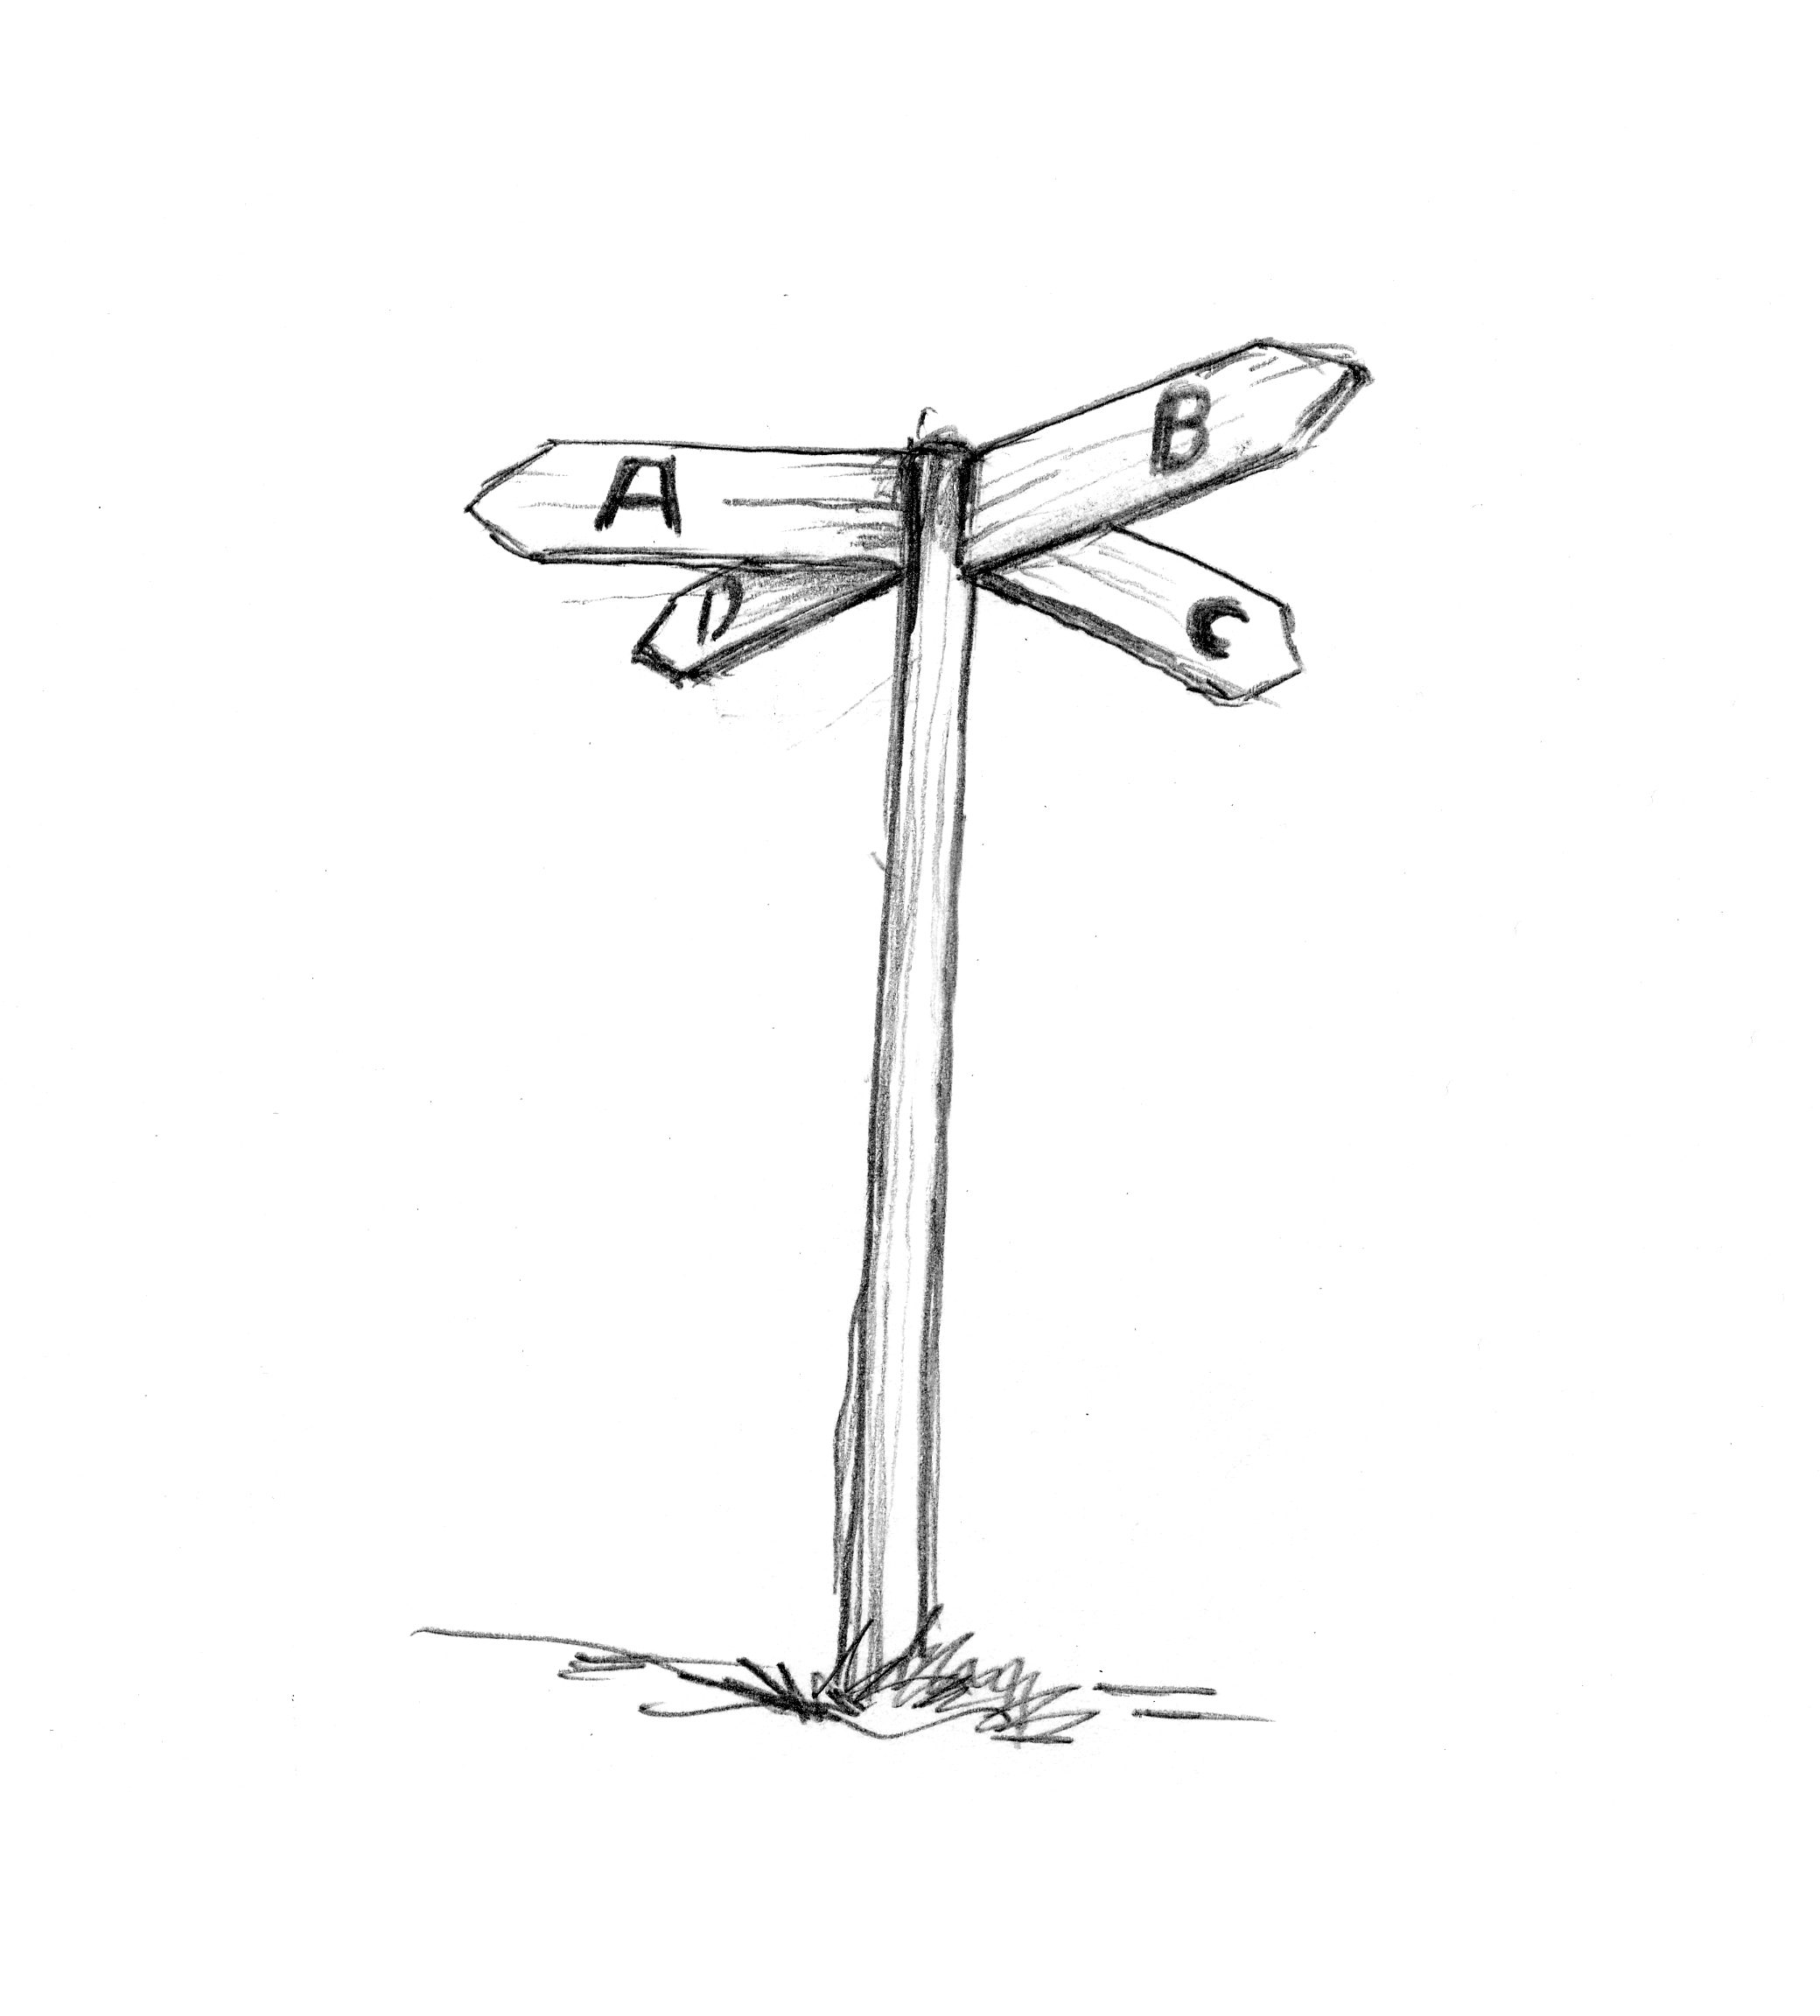 Zeichnung eines Wegweisers, der in die 4 Richtungen A, B, C und D weist